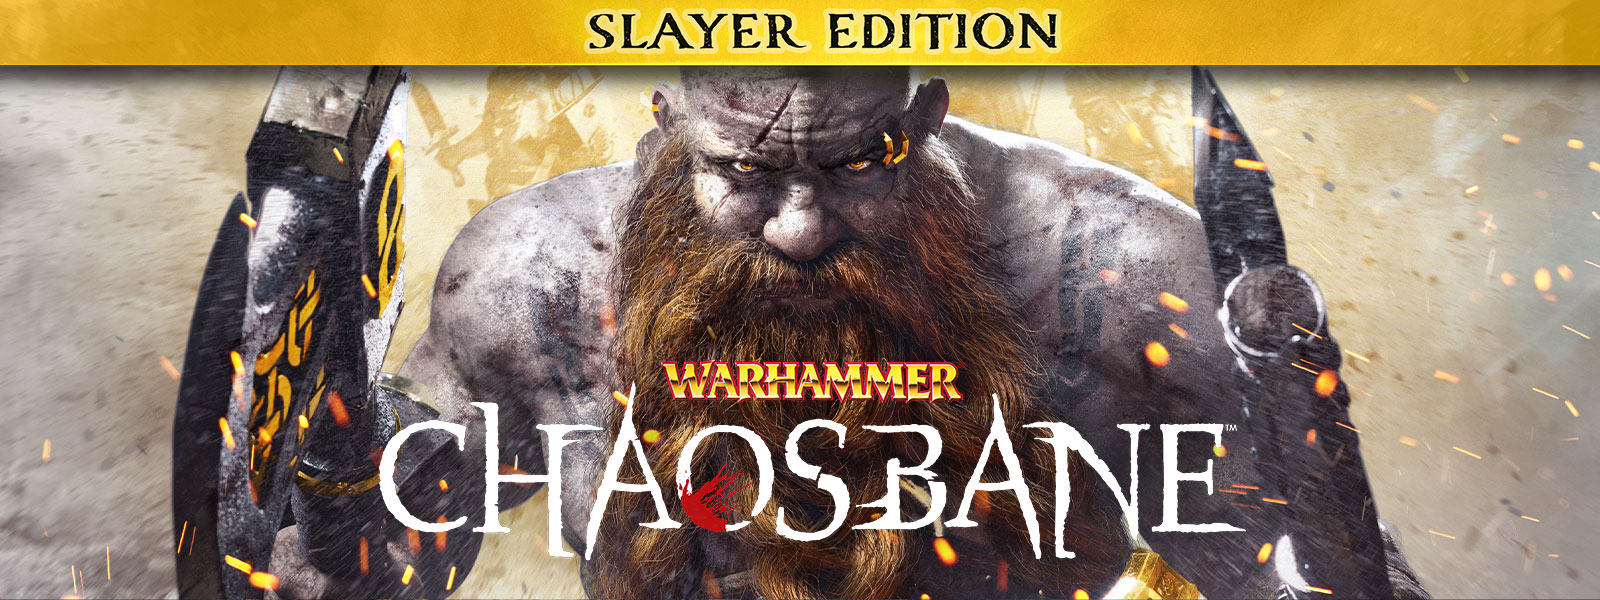 Warhammer: Chaosbane, Slayer Edition, Muž s bradkou prochází rojem jisker a nese sekeru v každé ruce.